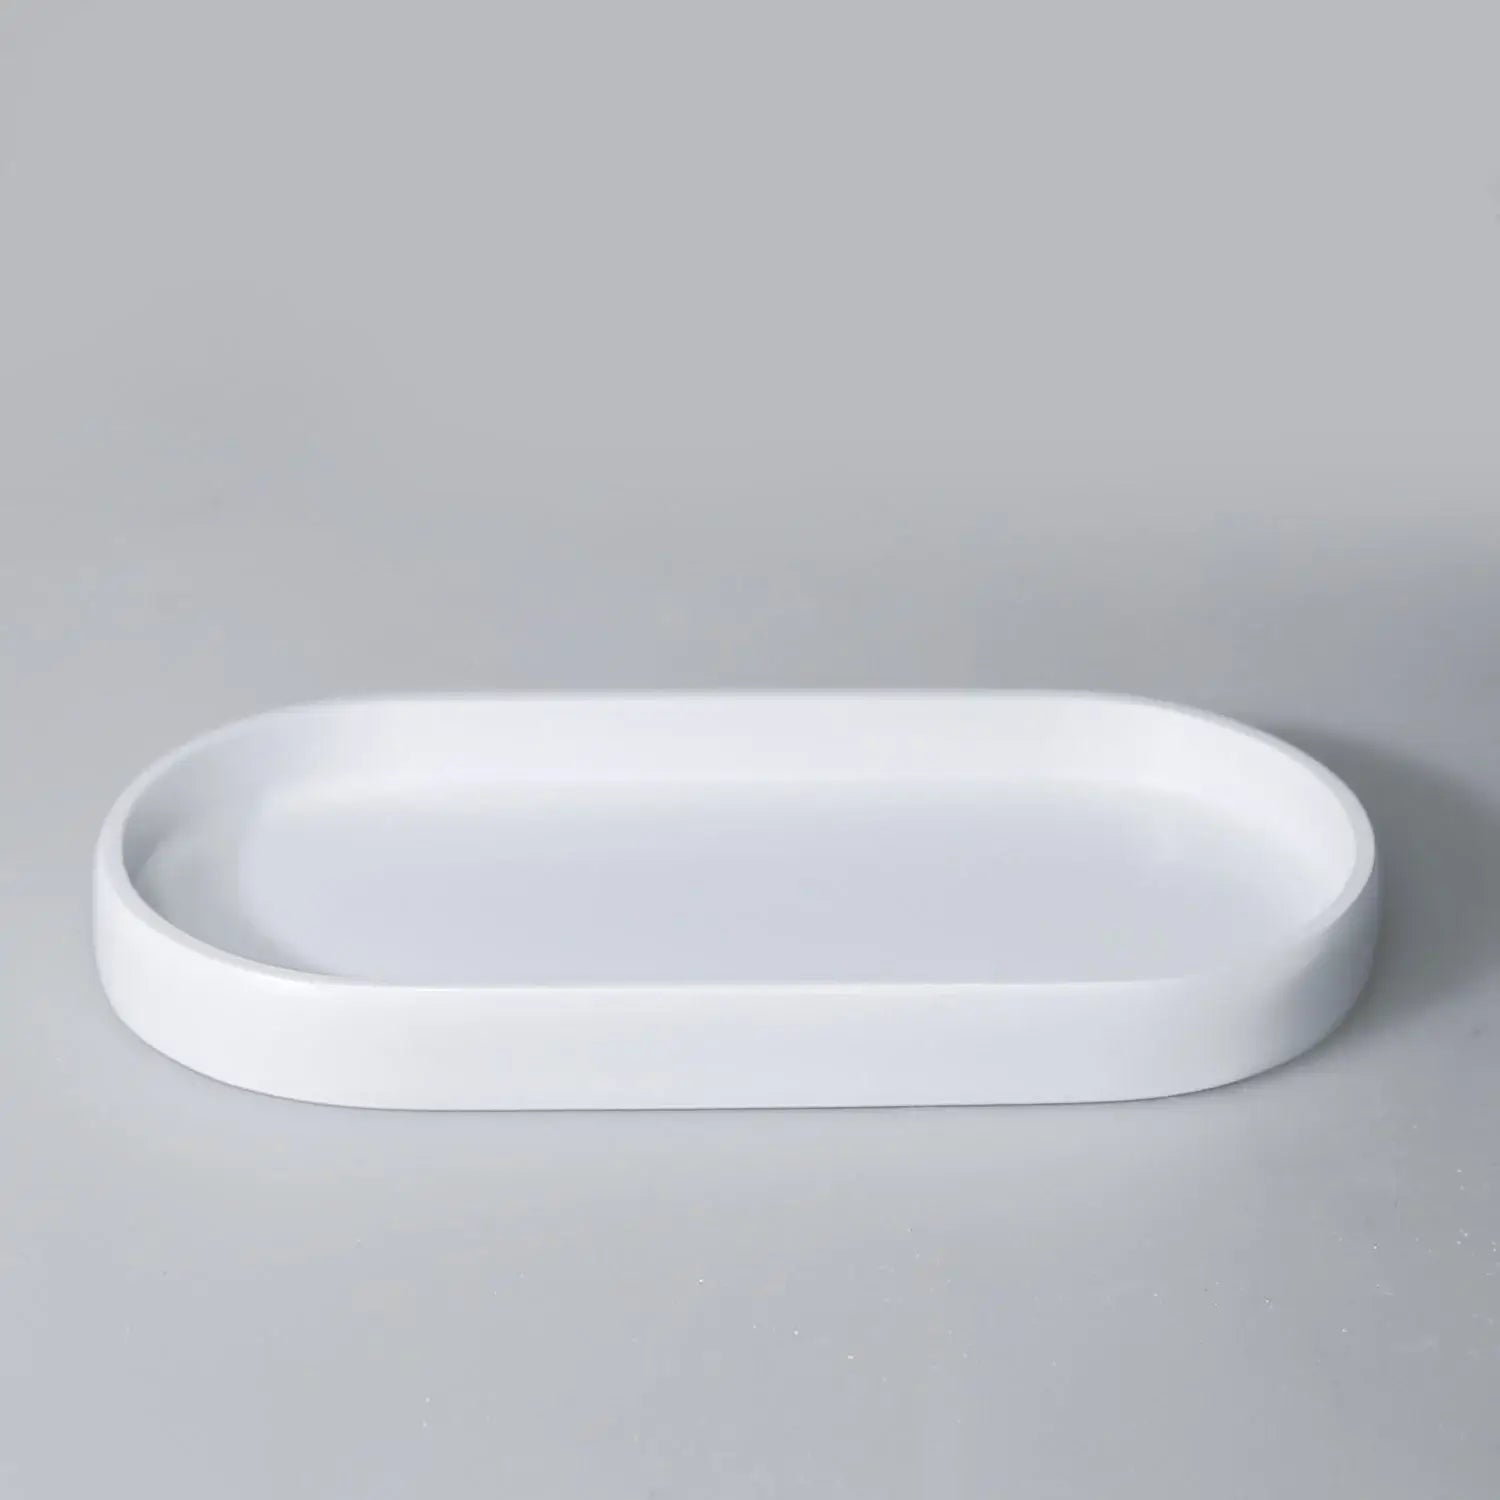 Ebru White Color 5 Piece Bathroom Accessory Set, Luxury Resin Modern Bath Decor by Creative Home,BAS-SLM-EBRU-W